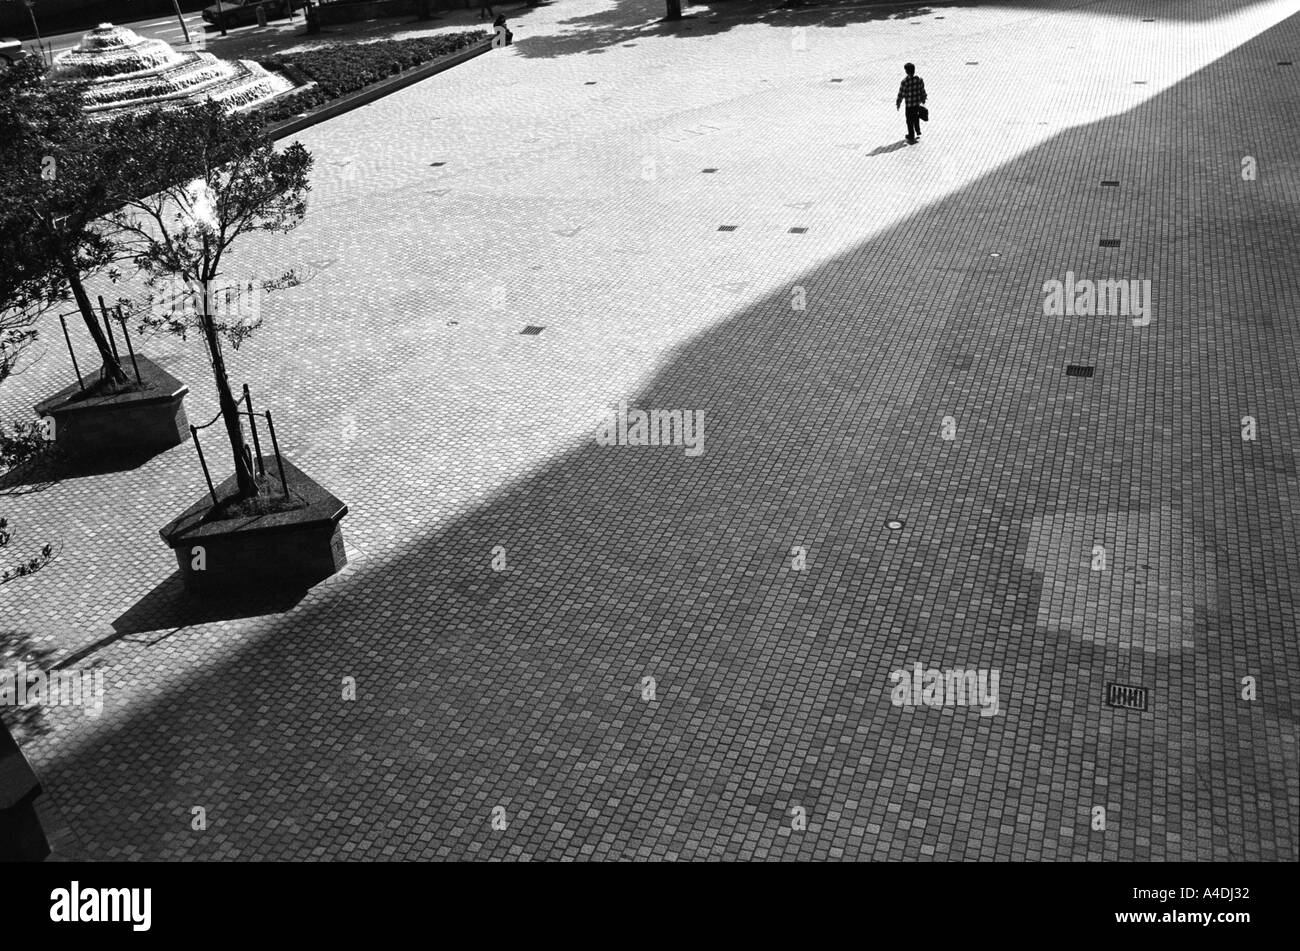 Un homme marche à travers un espace vide. Hong Kong, République populaire de Chine, Hong Kong Banque D'Images